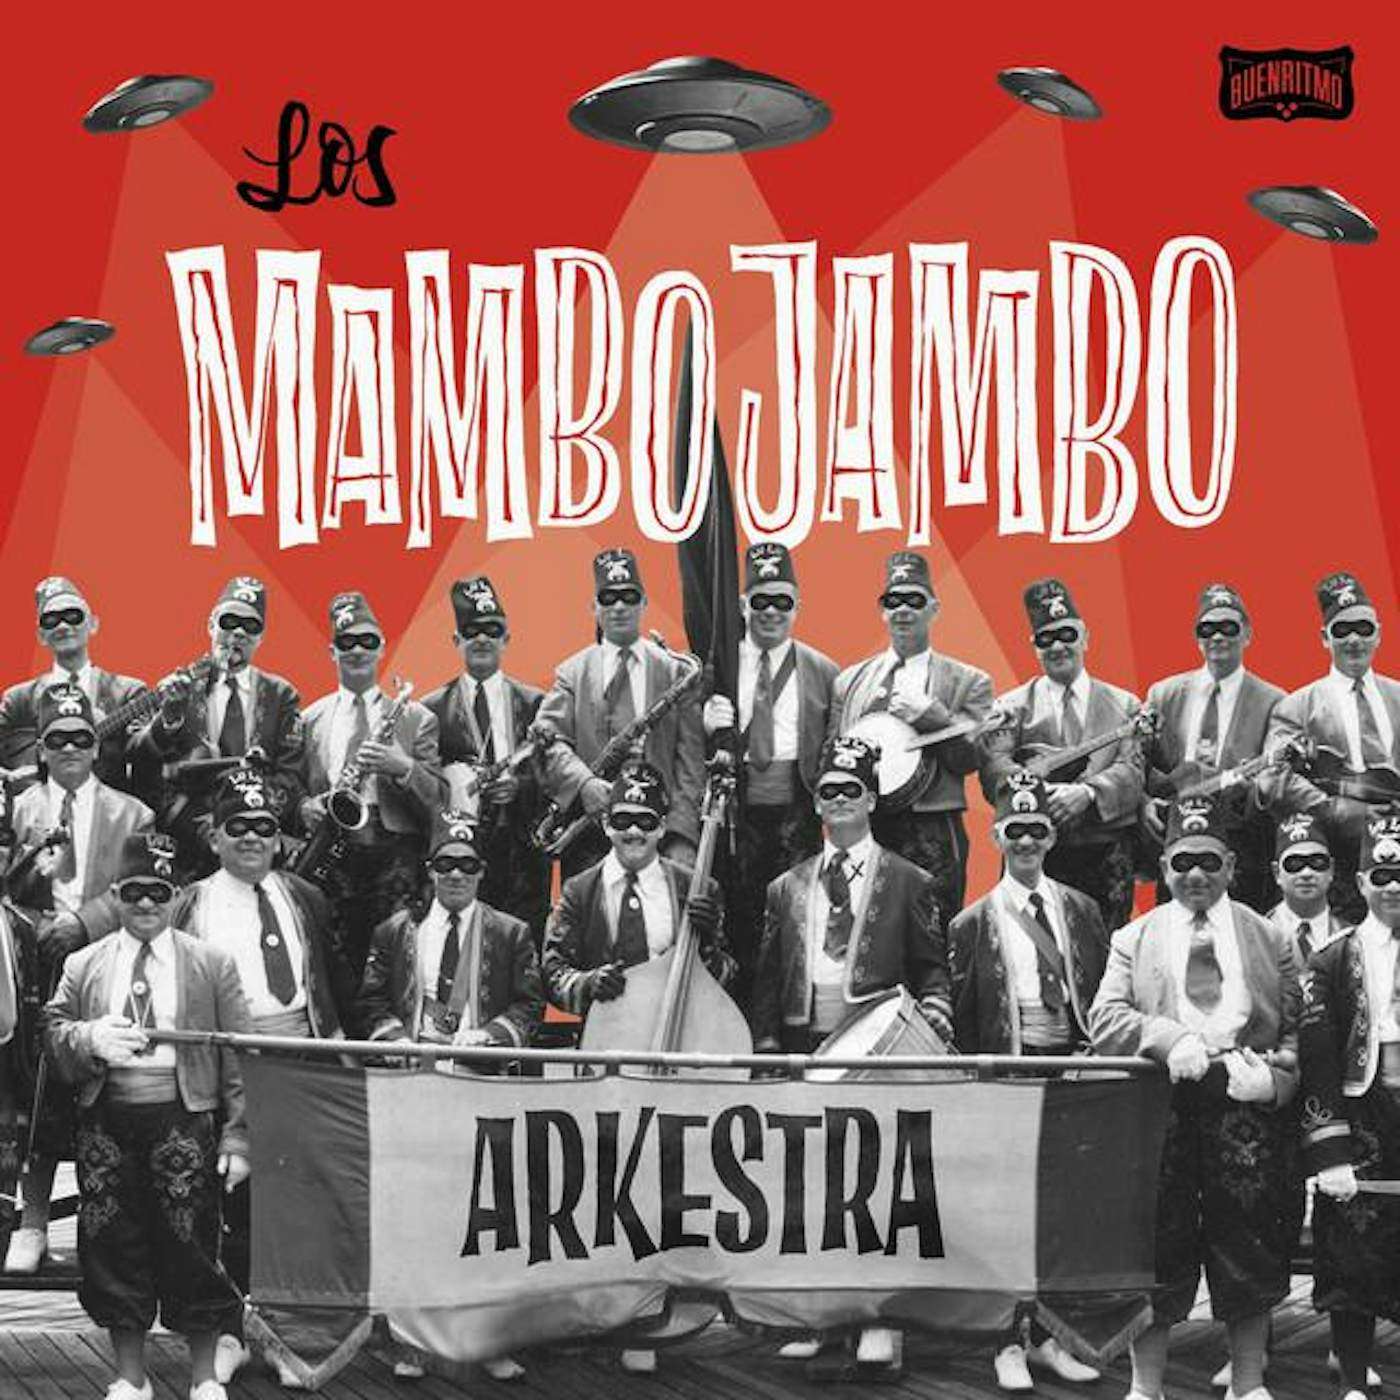 Los Mambo Jambo